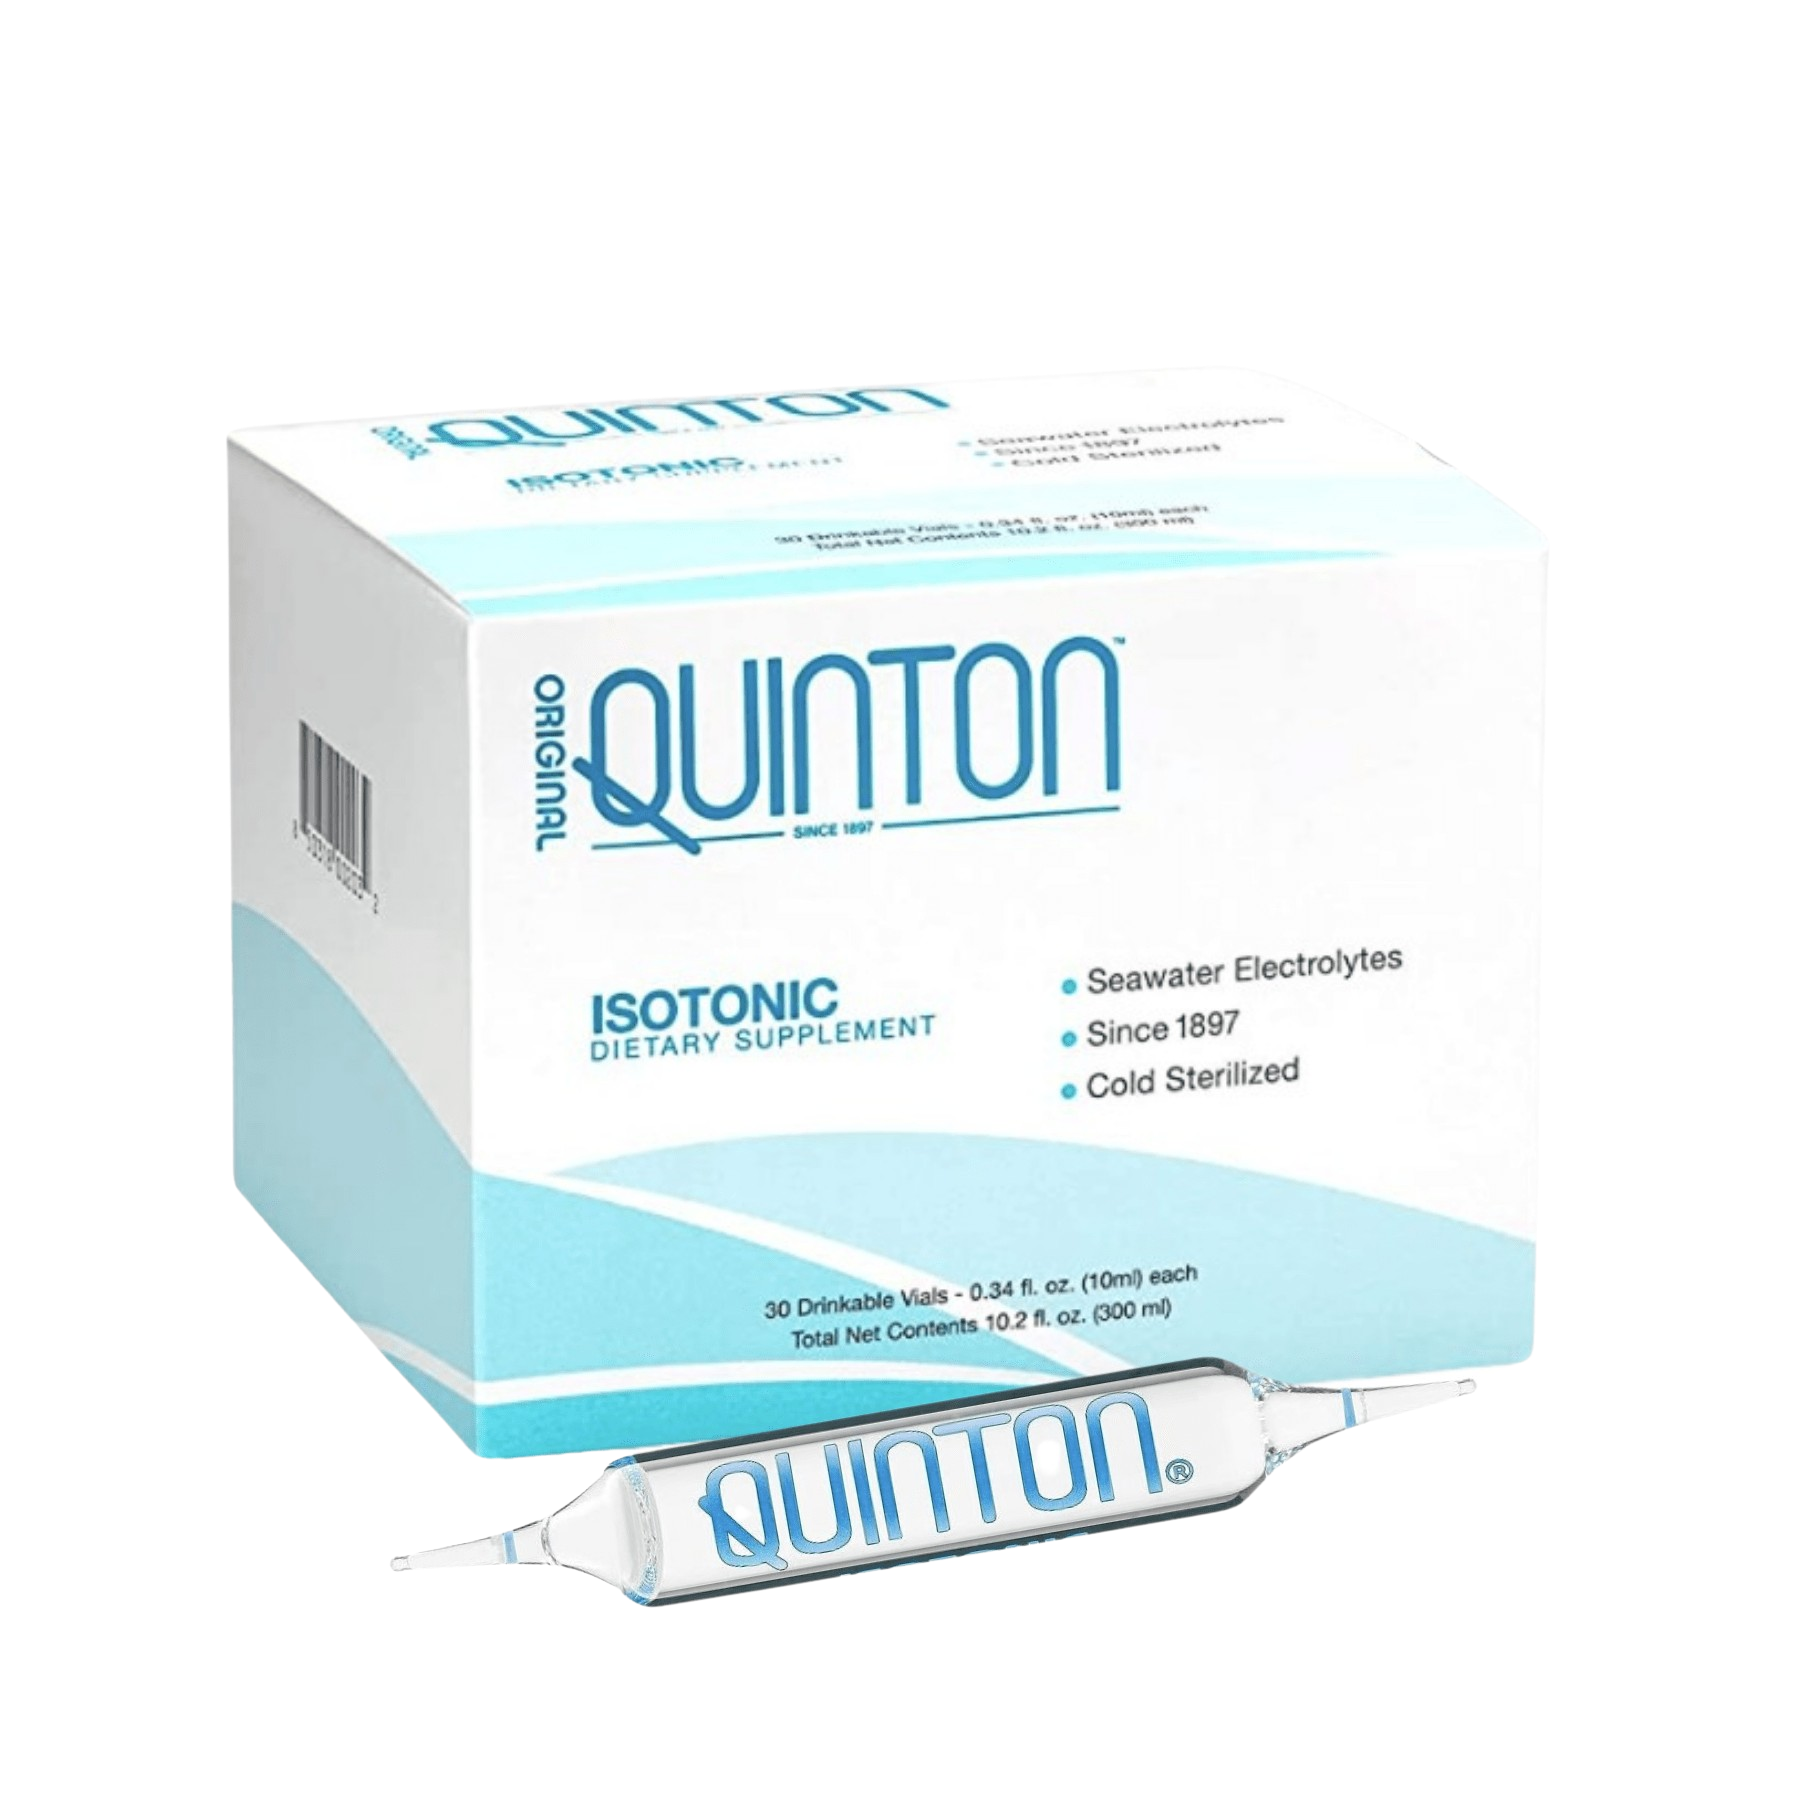 Original Quinton Hypertonic® 30 ampules of Marine Plasma – Water